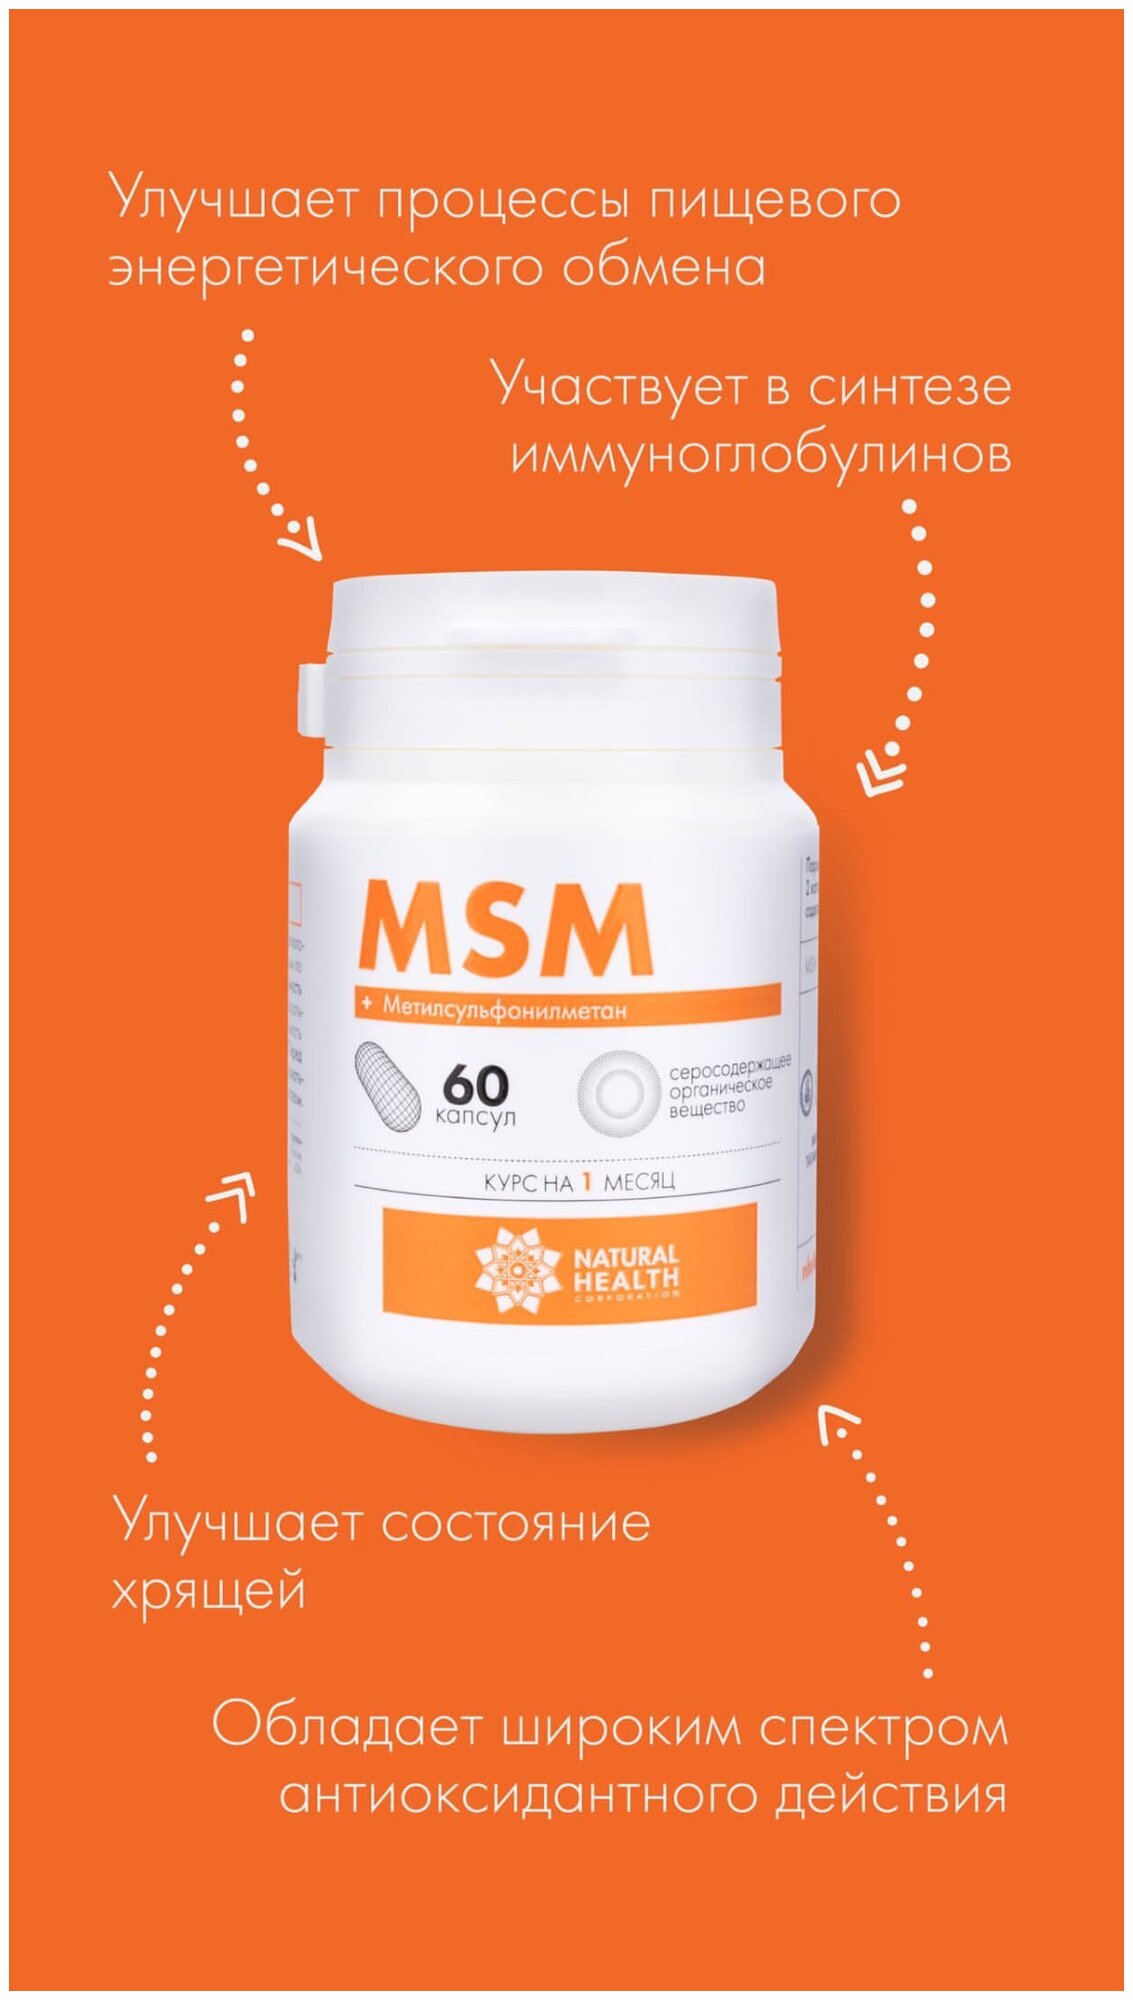 Метилсульфонилметан (MSM) – органическая сера, 60 капсул, Natural Health. Витамины для суставов, хрящей, связок. Способствует улучшению состояния кожи, волос и ногтей. MSM участвует в синтезе коллагена и кератина.